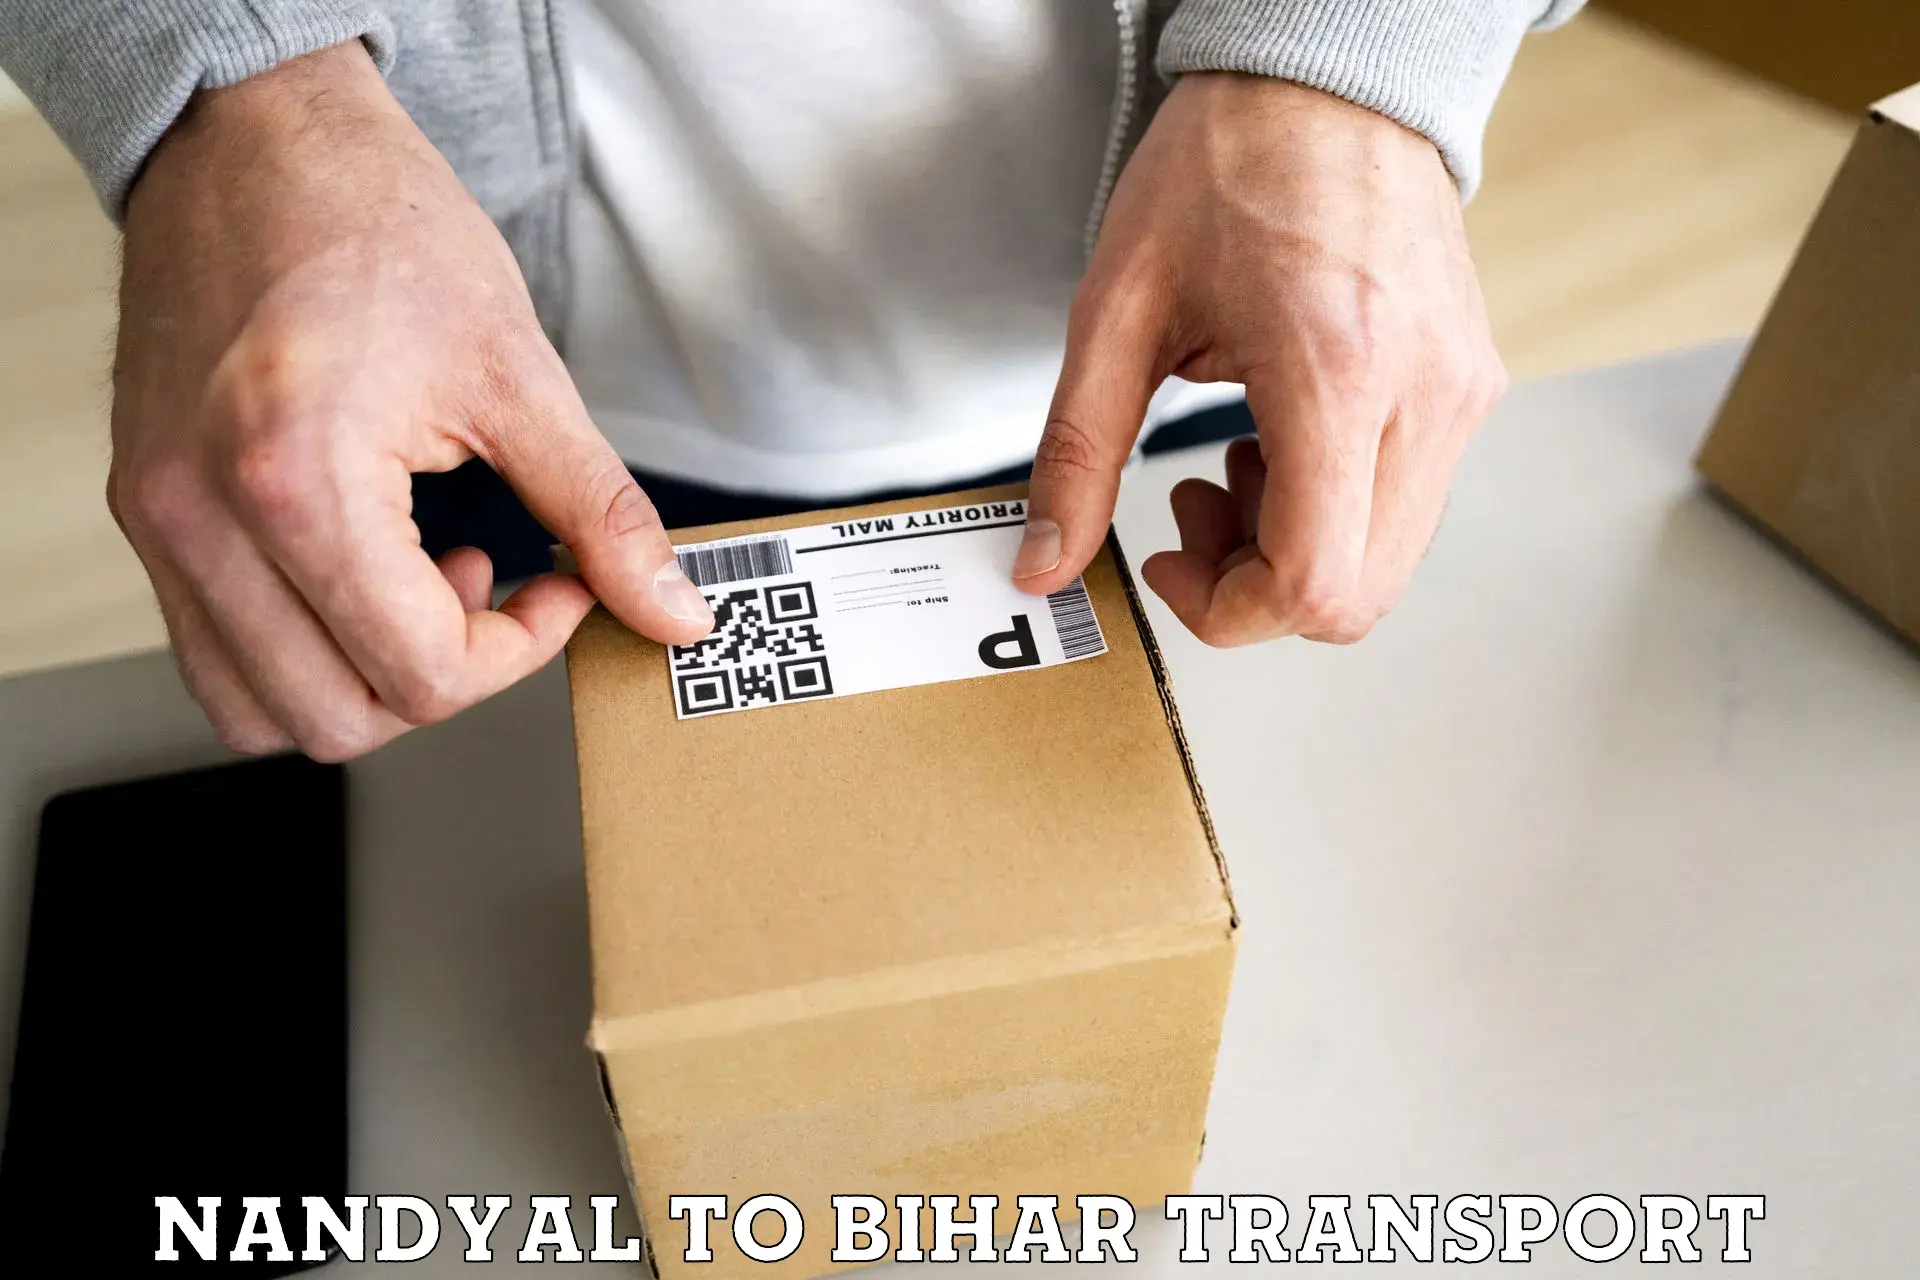 Furniture transport service Nandyal to Saran